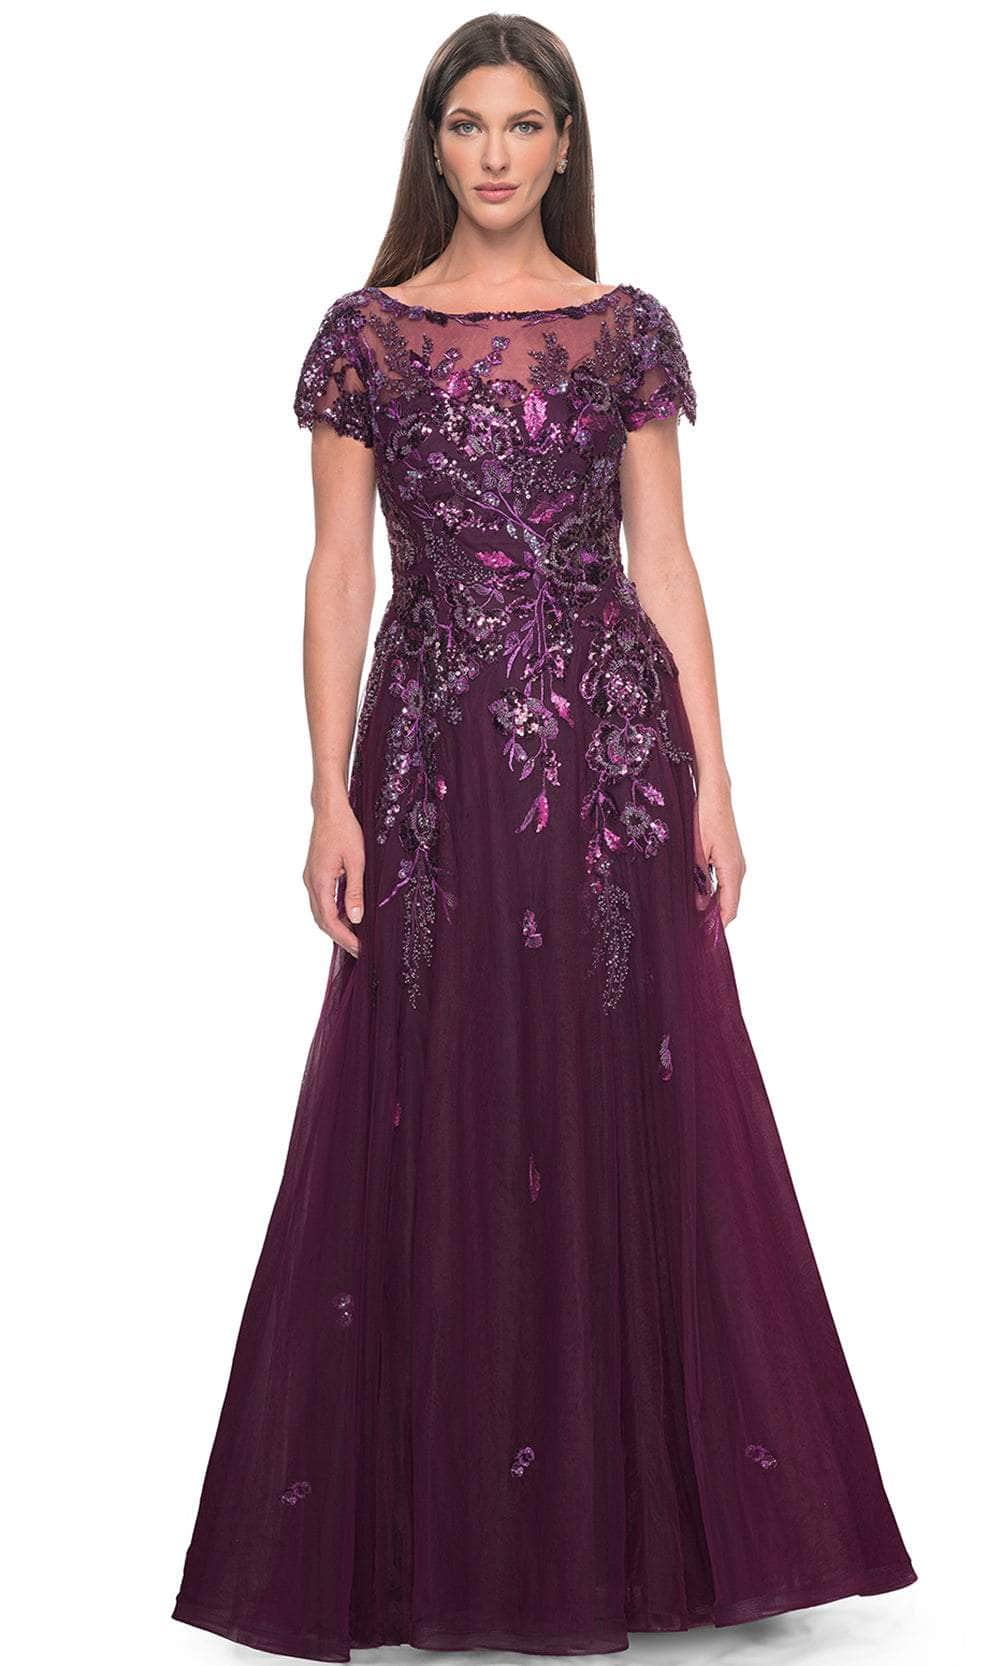 La Femme 31712 - Floral Lace Applique A-line Evening Dress
